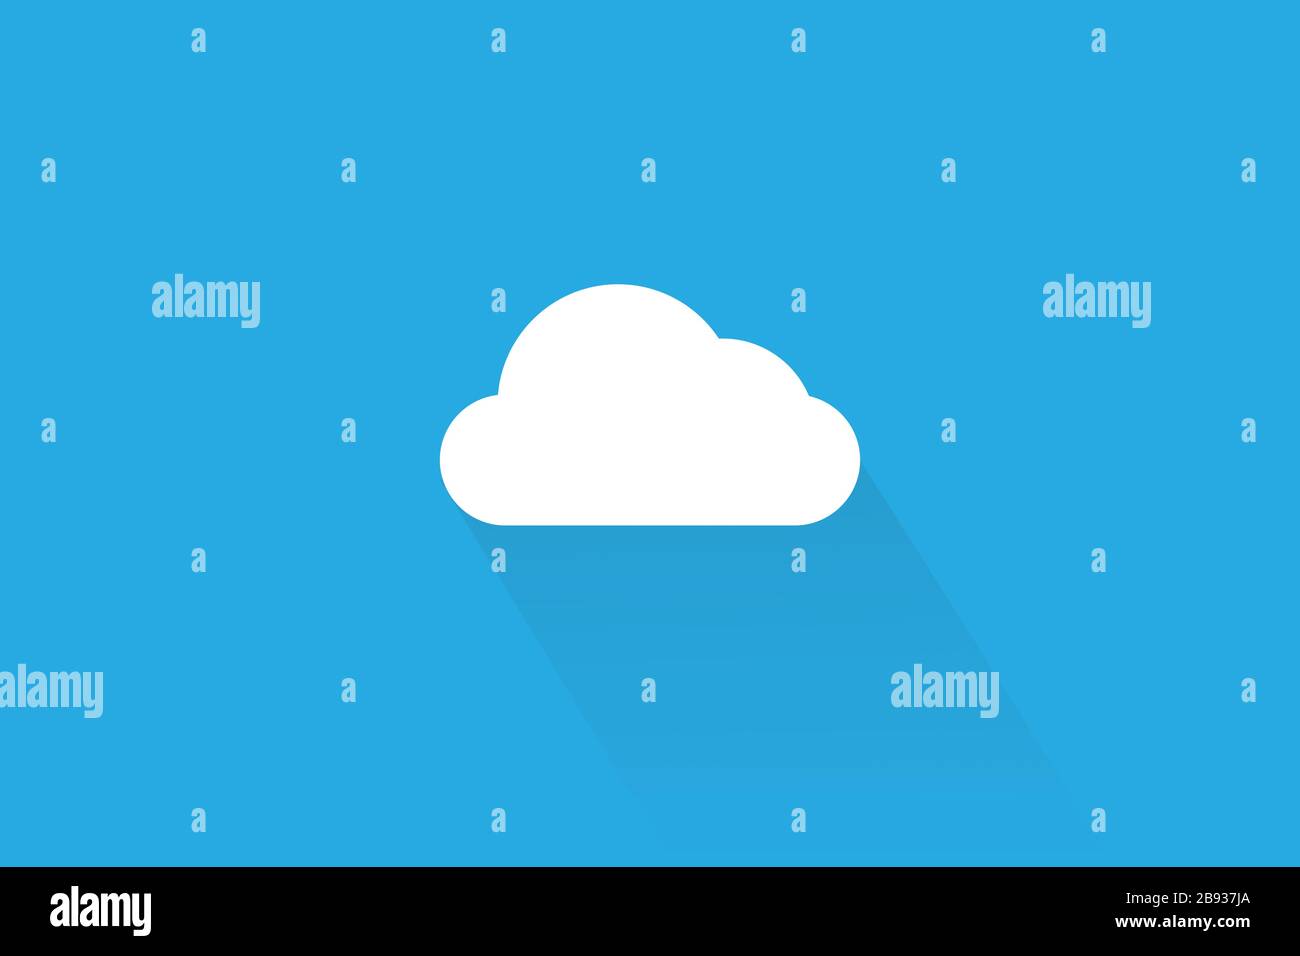 Nuvola semplice con ombra chiara isolata su sfondo blu. Icona per il meteo o il concetto di tecnologia. Illustrazione vettoriale in stile piatto alla moda Illustrazione Vettoriale